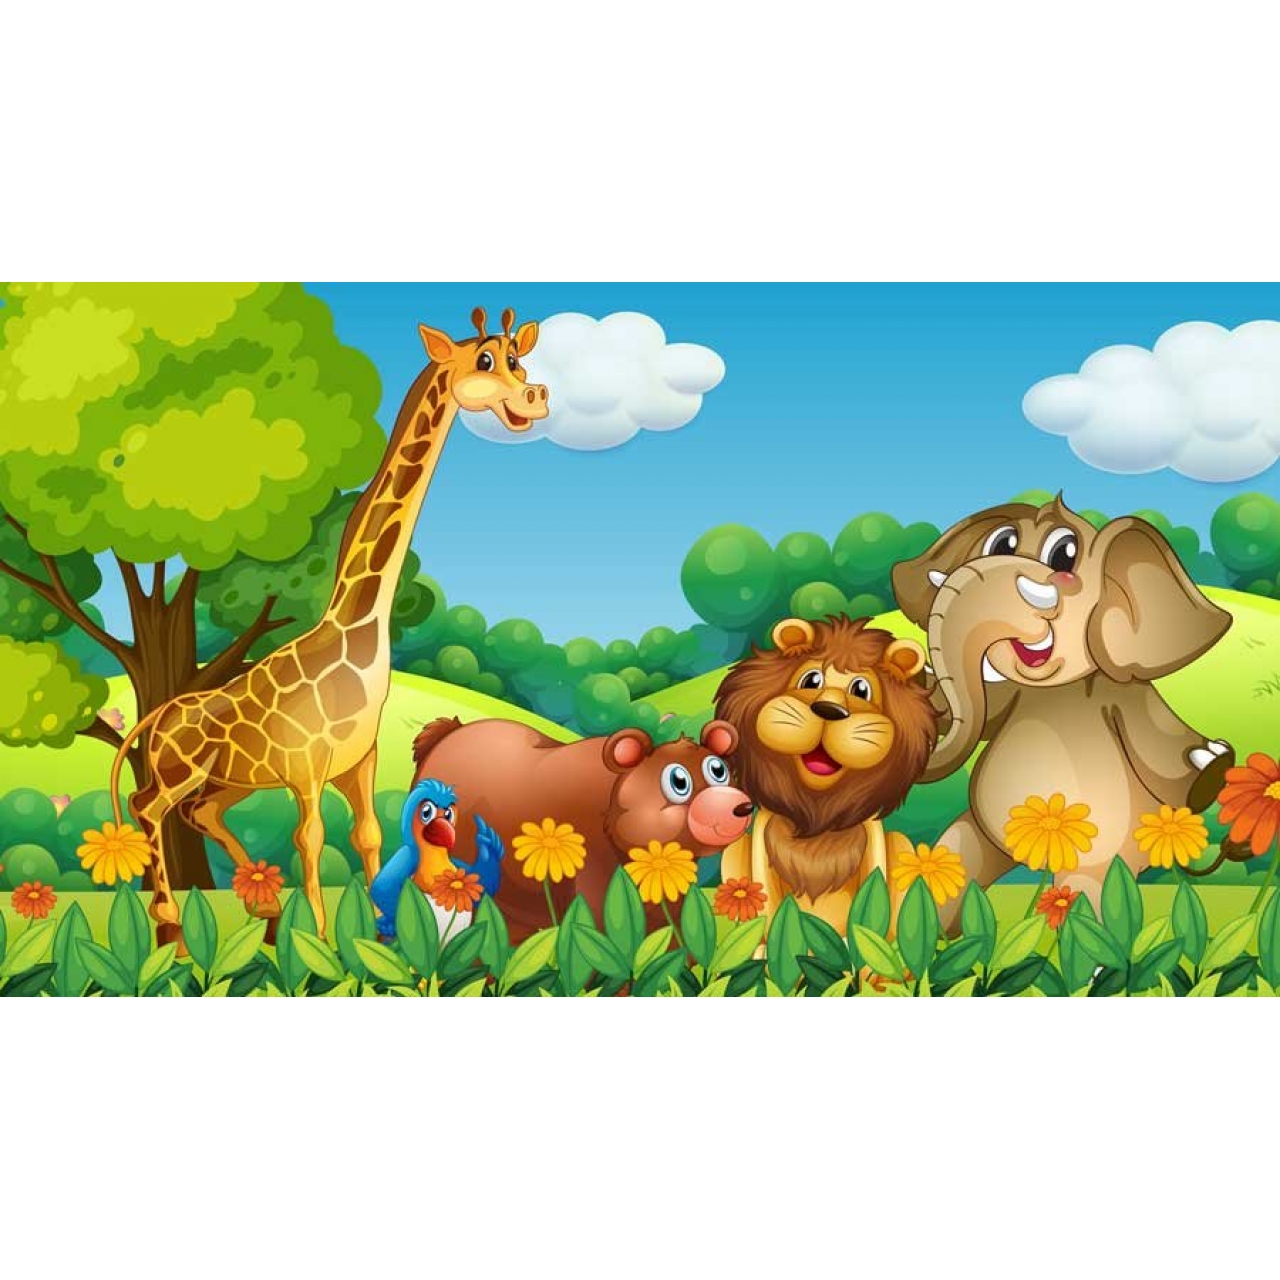 Ana Okulu Orman ve Hayvanlar Posteri